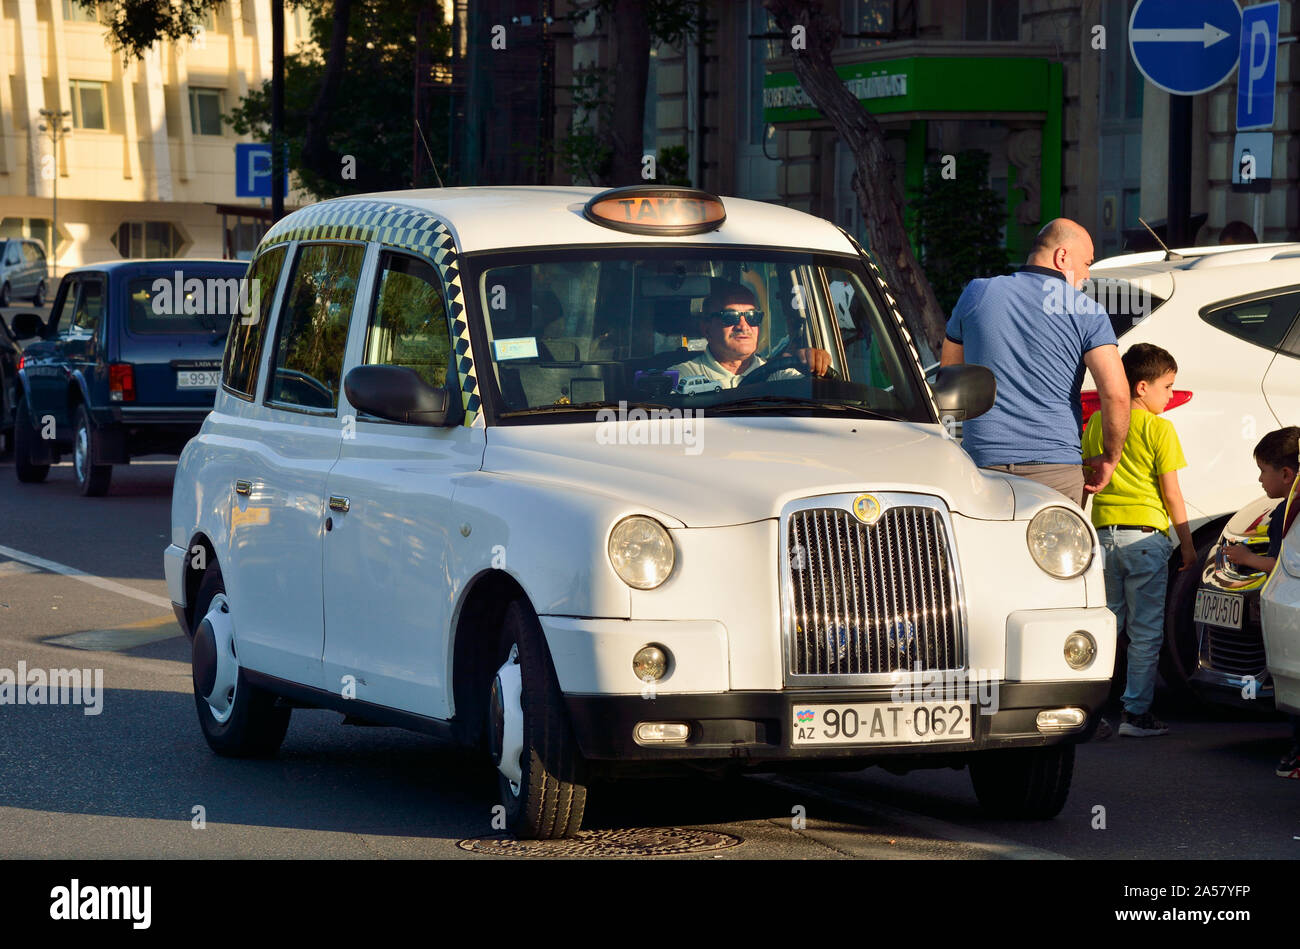 London-style taxi in Baku, Azerbaijan Stock Photo